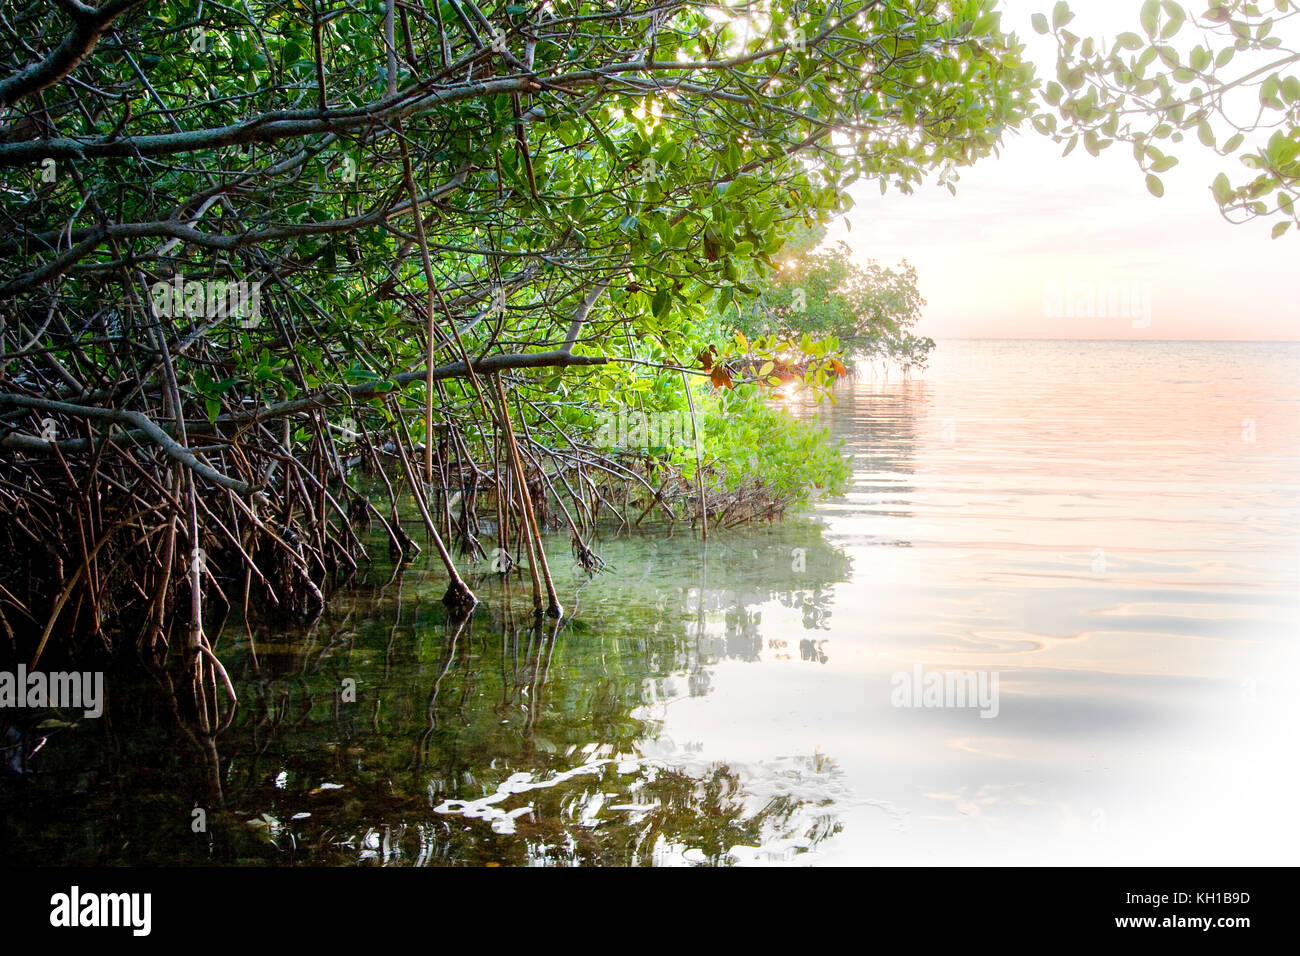 Rote Mangroven, Rhizophora mangle, bei Tagesanbruch Florida Keys National Marine Sanctuary, Key Largo, Florida Stockfoto